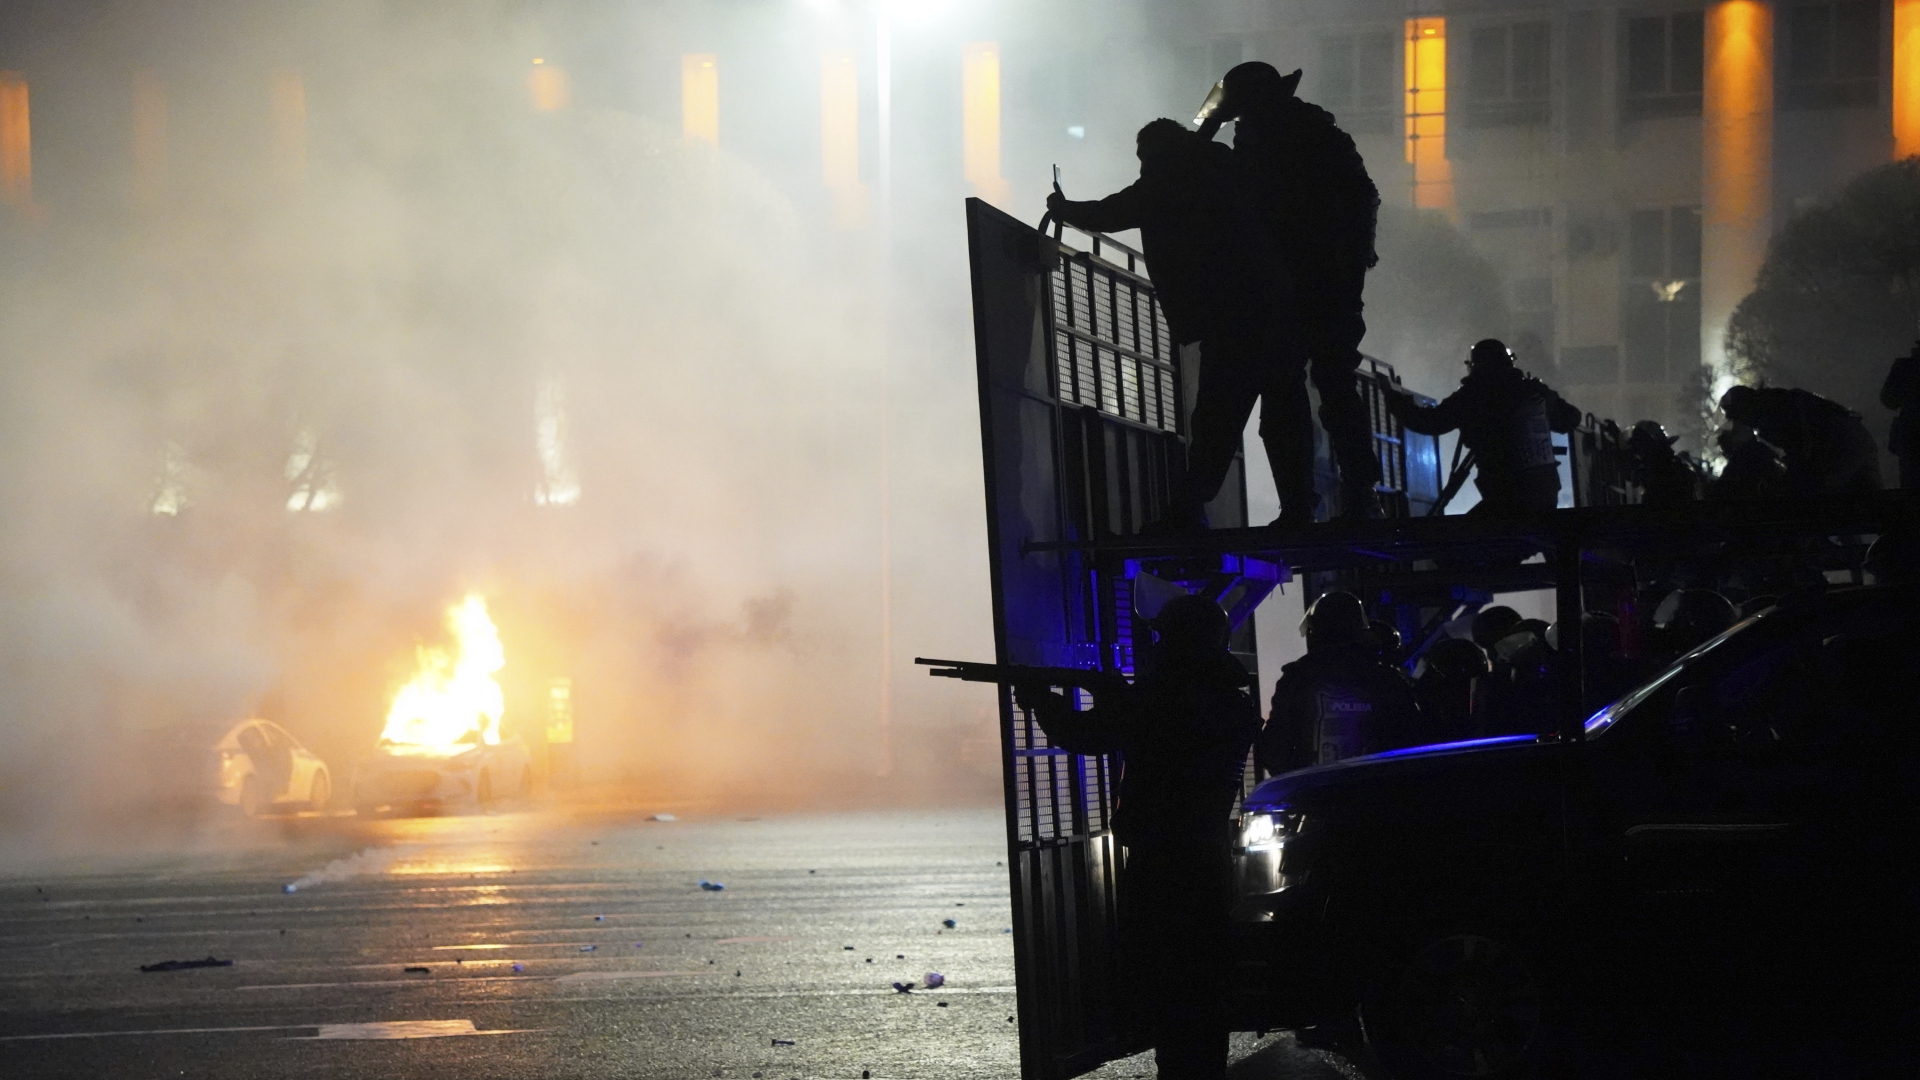 Bereitschaftspolizisten blockieren Demonstranten in der Innenstadt, während im Hintergrund ein Polizeiauto brennt.  | dpa